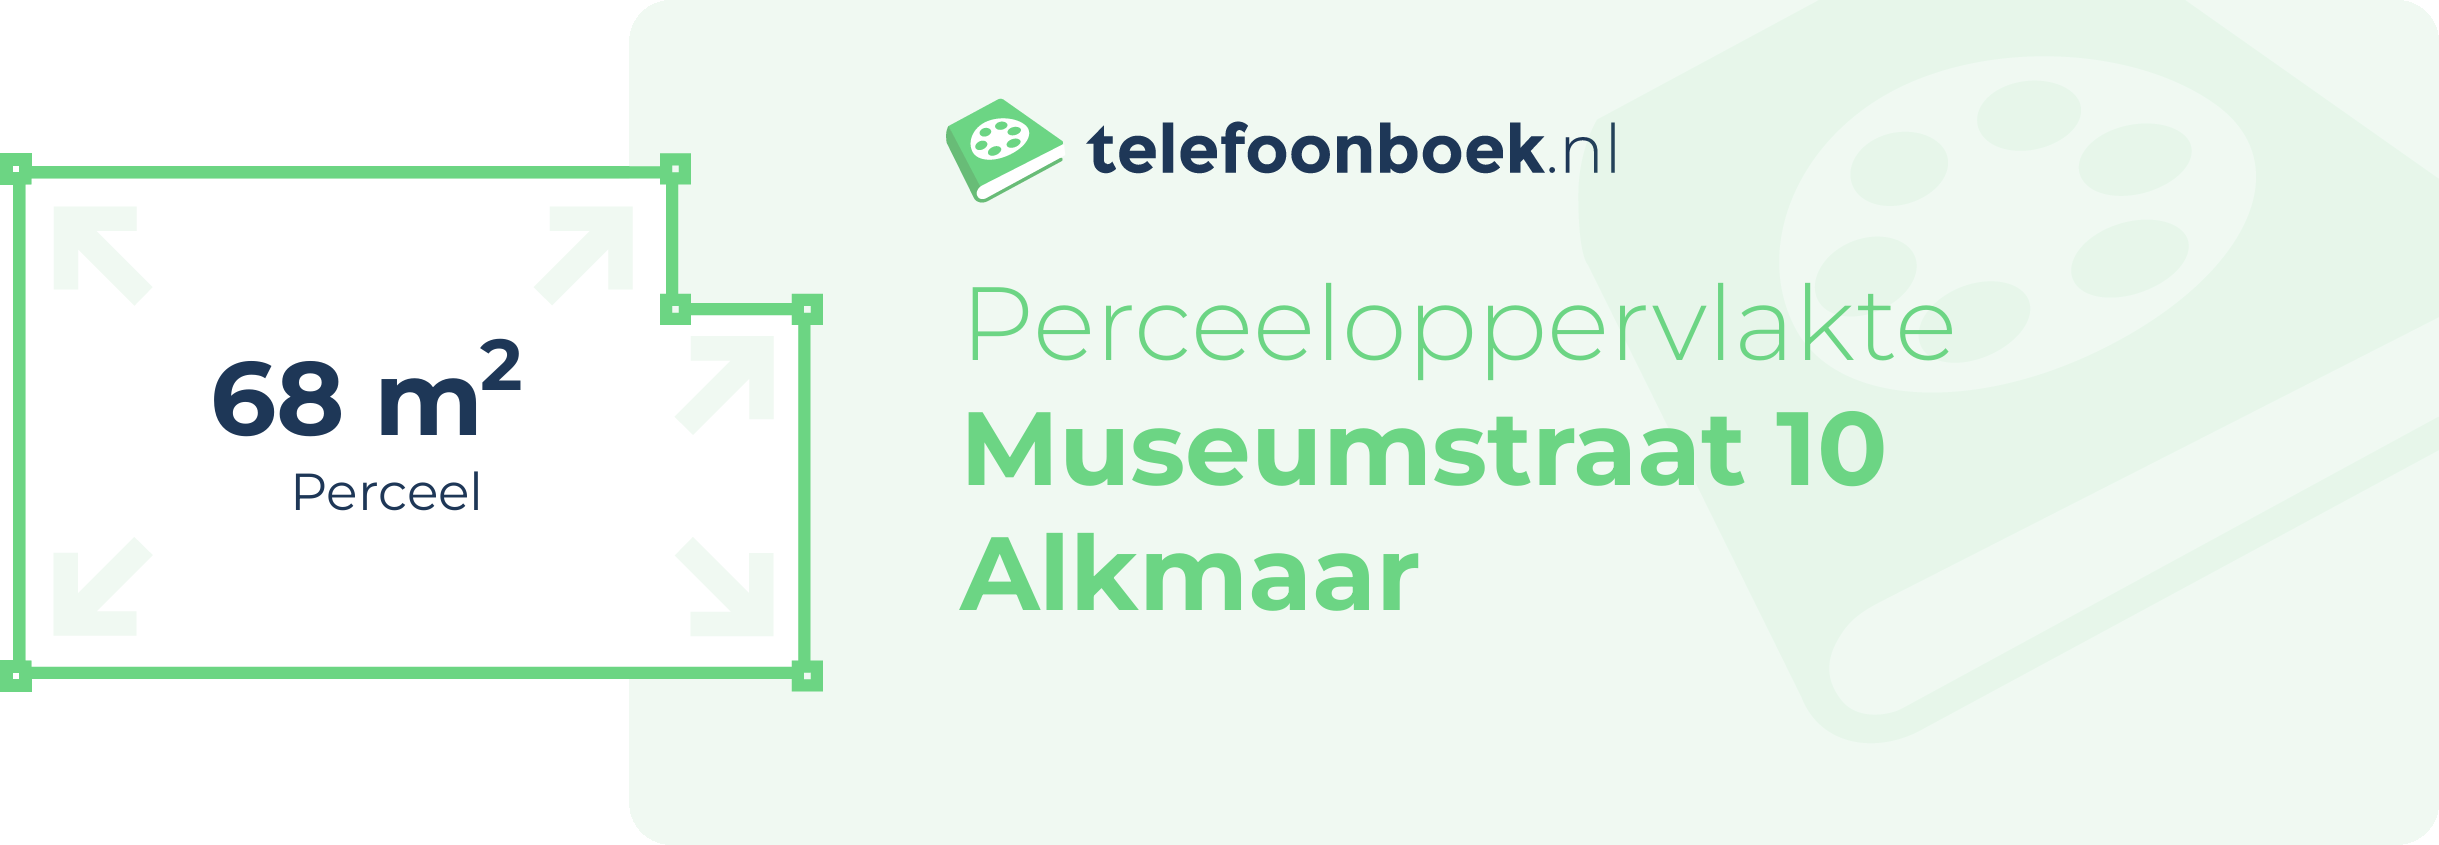 Perceeloppervlakte Museumstraat 10 Alkmaar